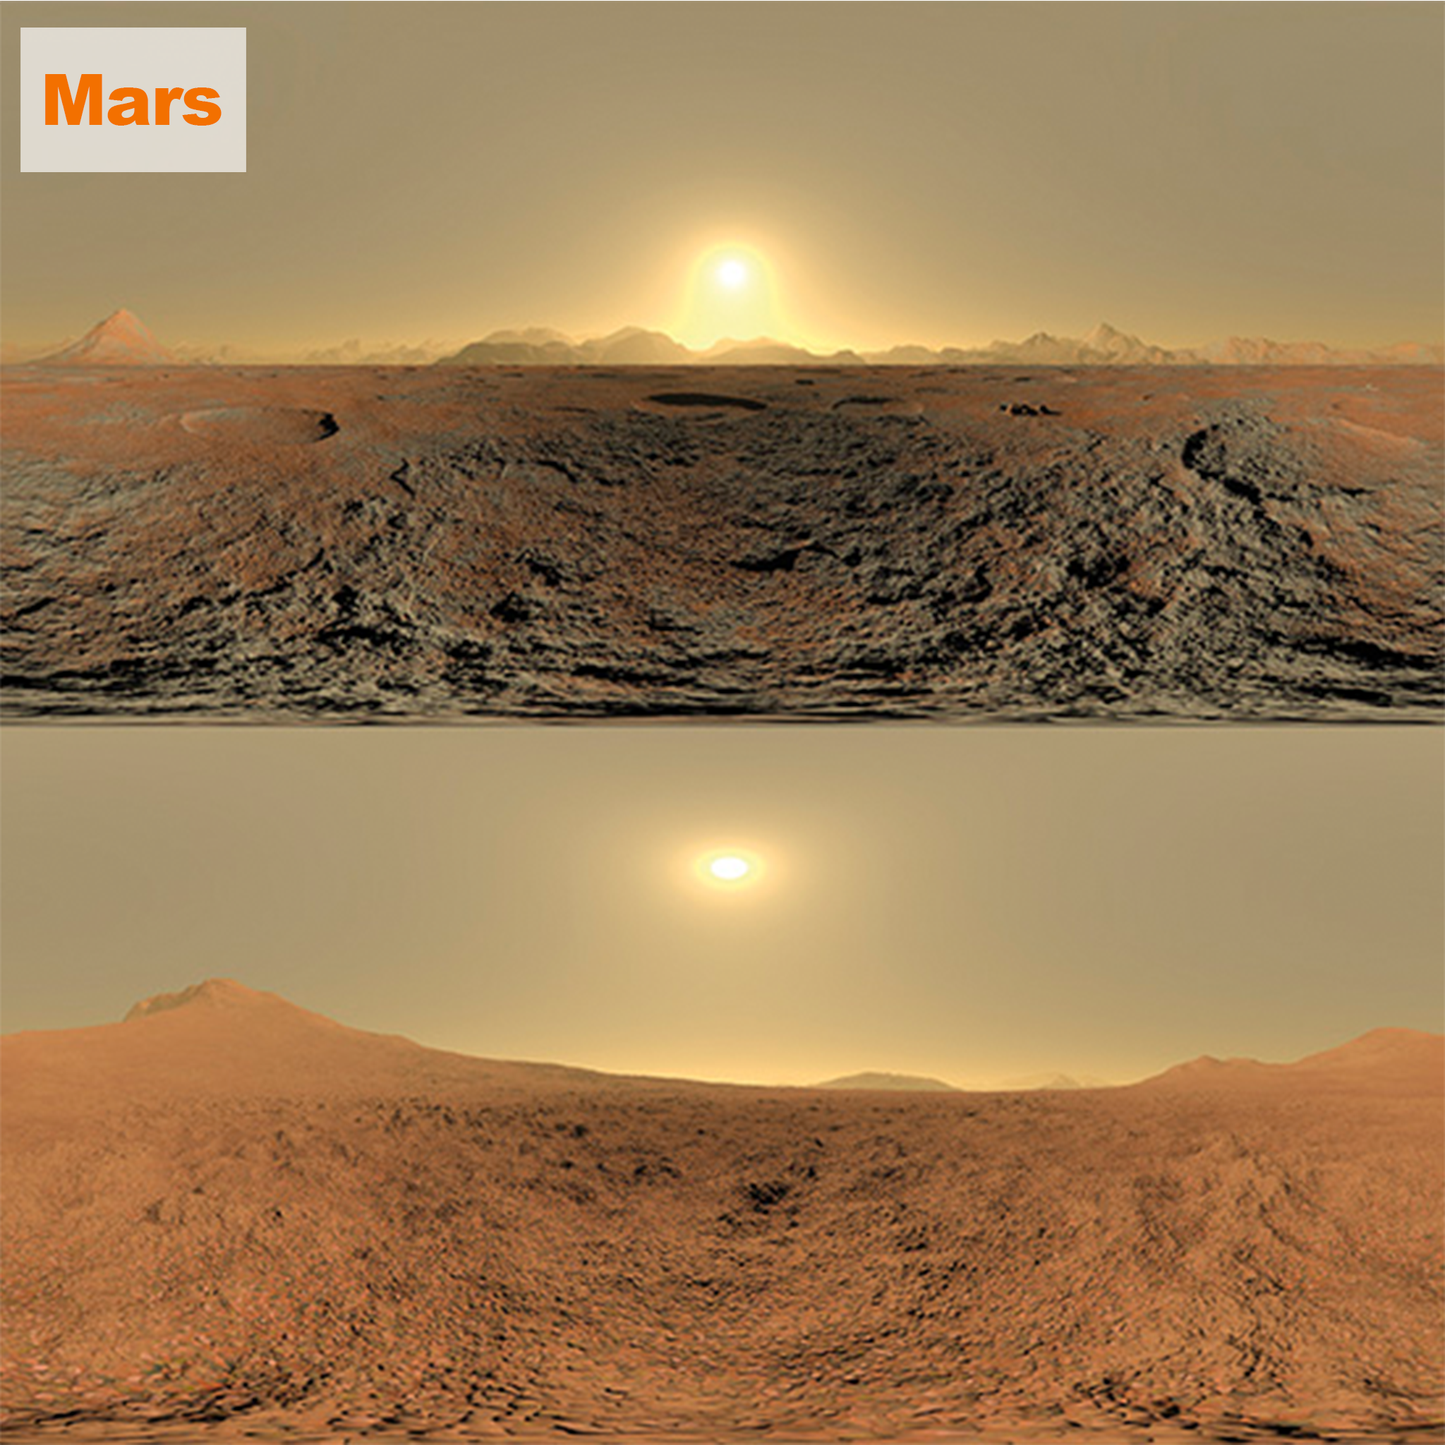 HDRI【No.59 DOSCH HDRI: Mars】